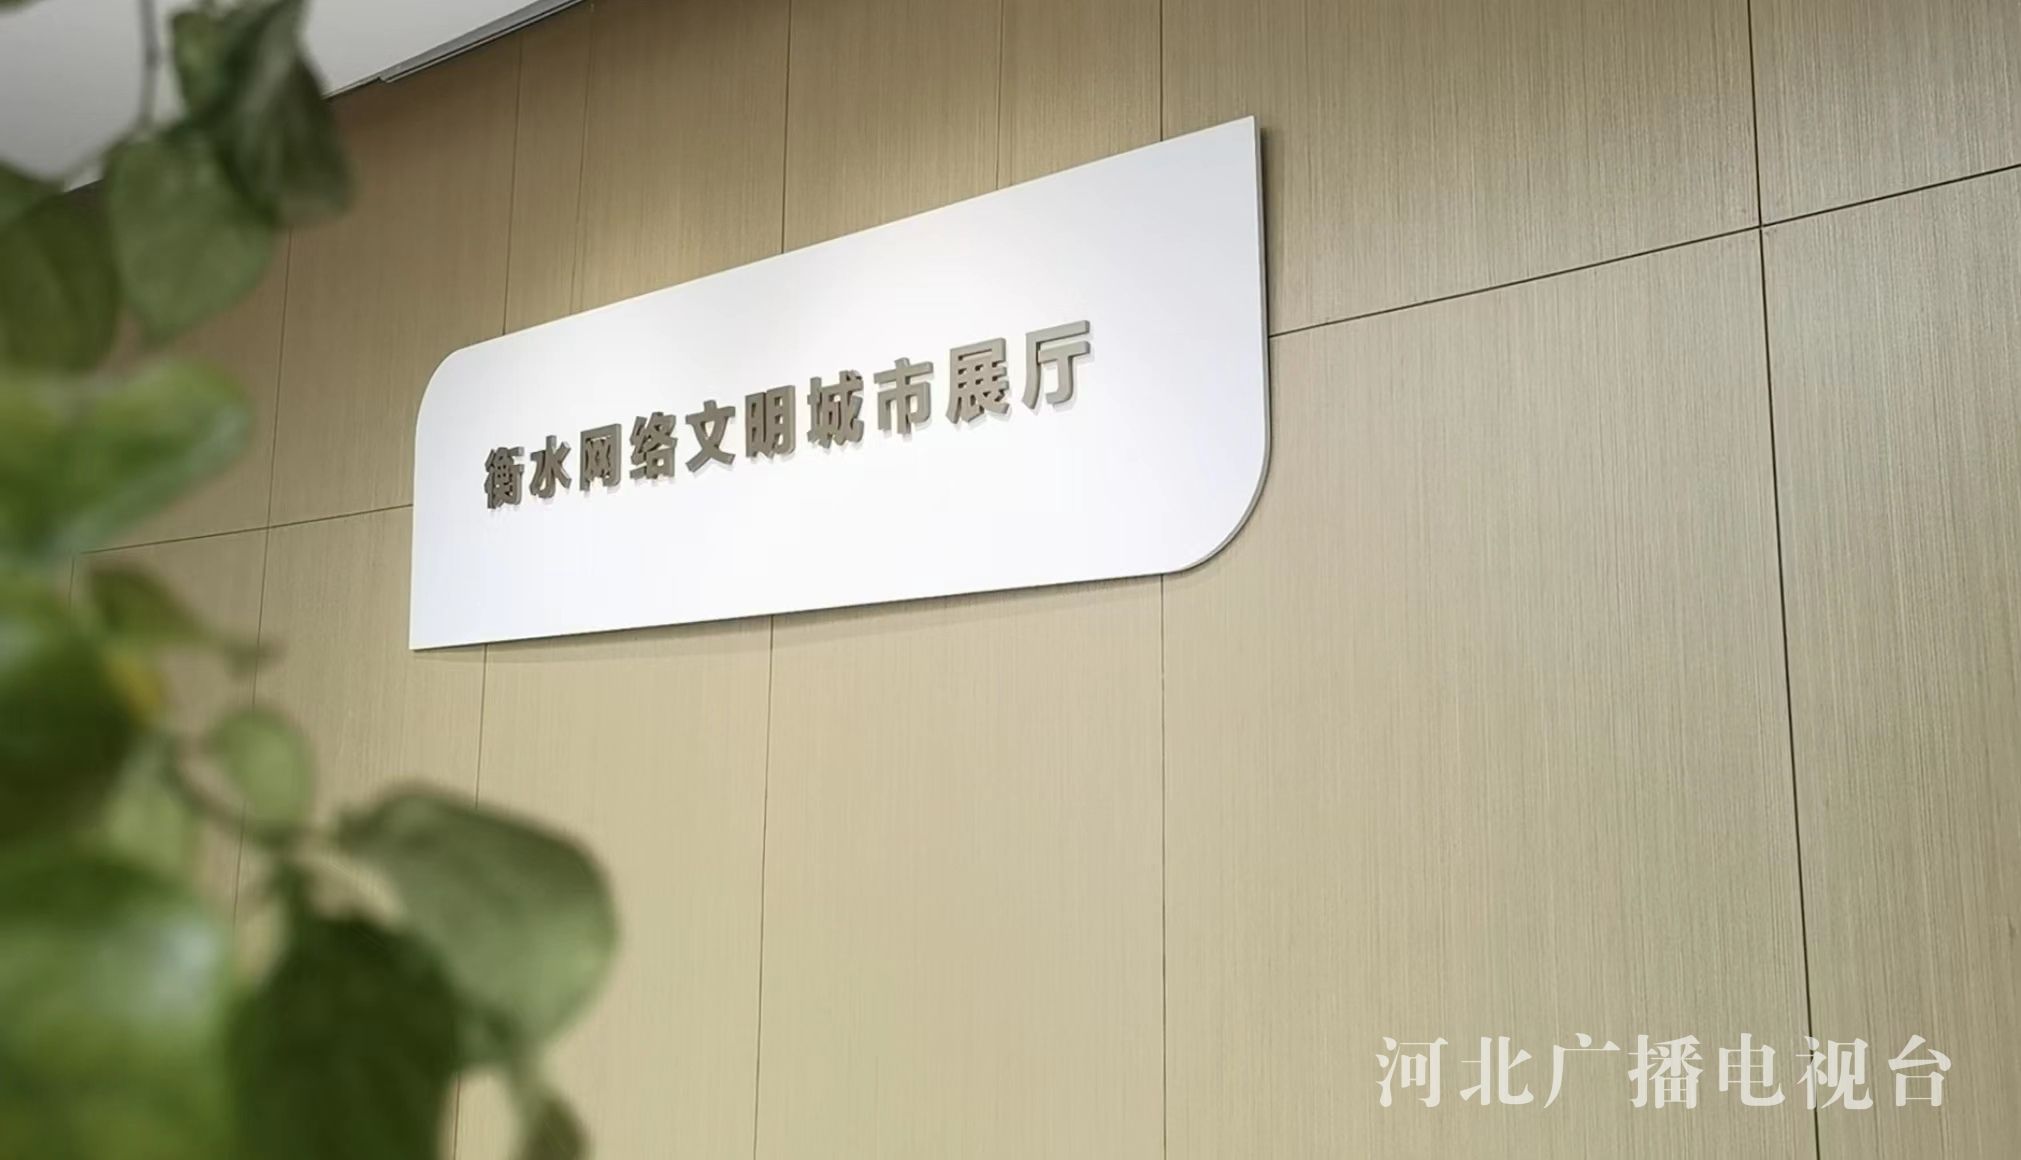 ag真人游戏河北省首家网络文明主题展厅正式对外开放